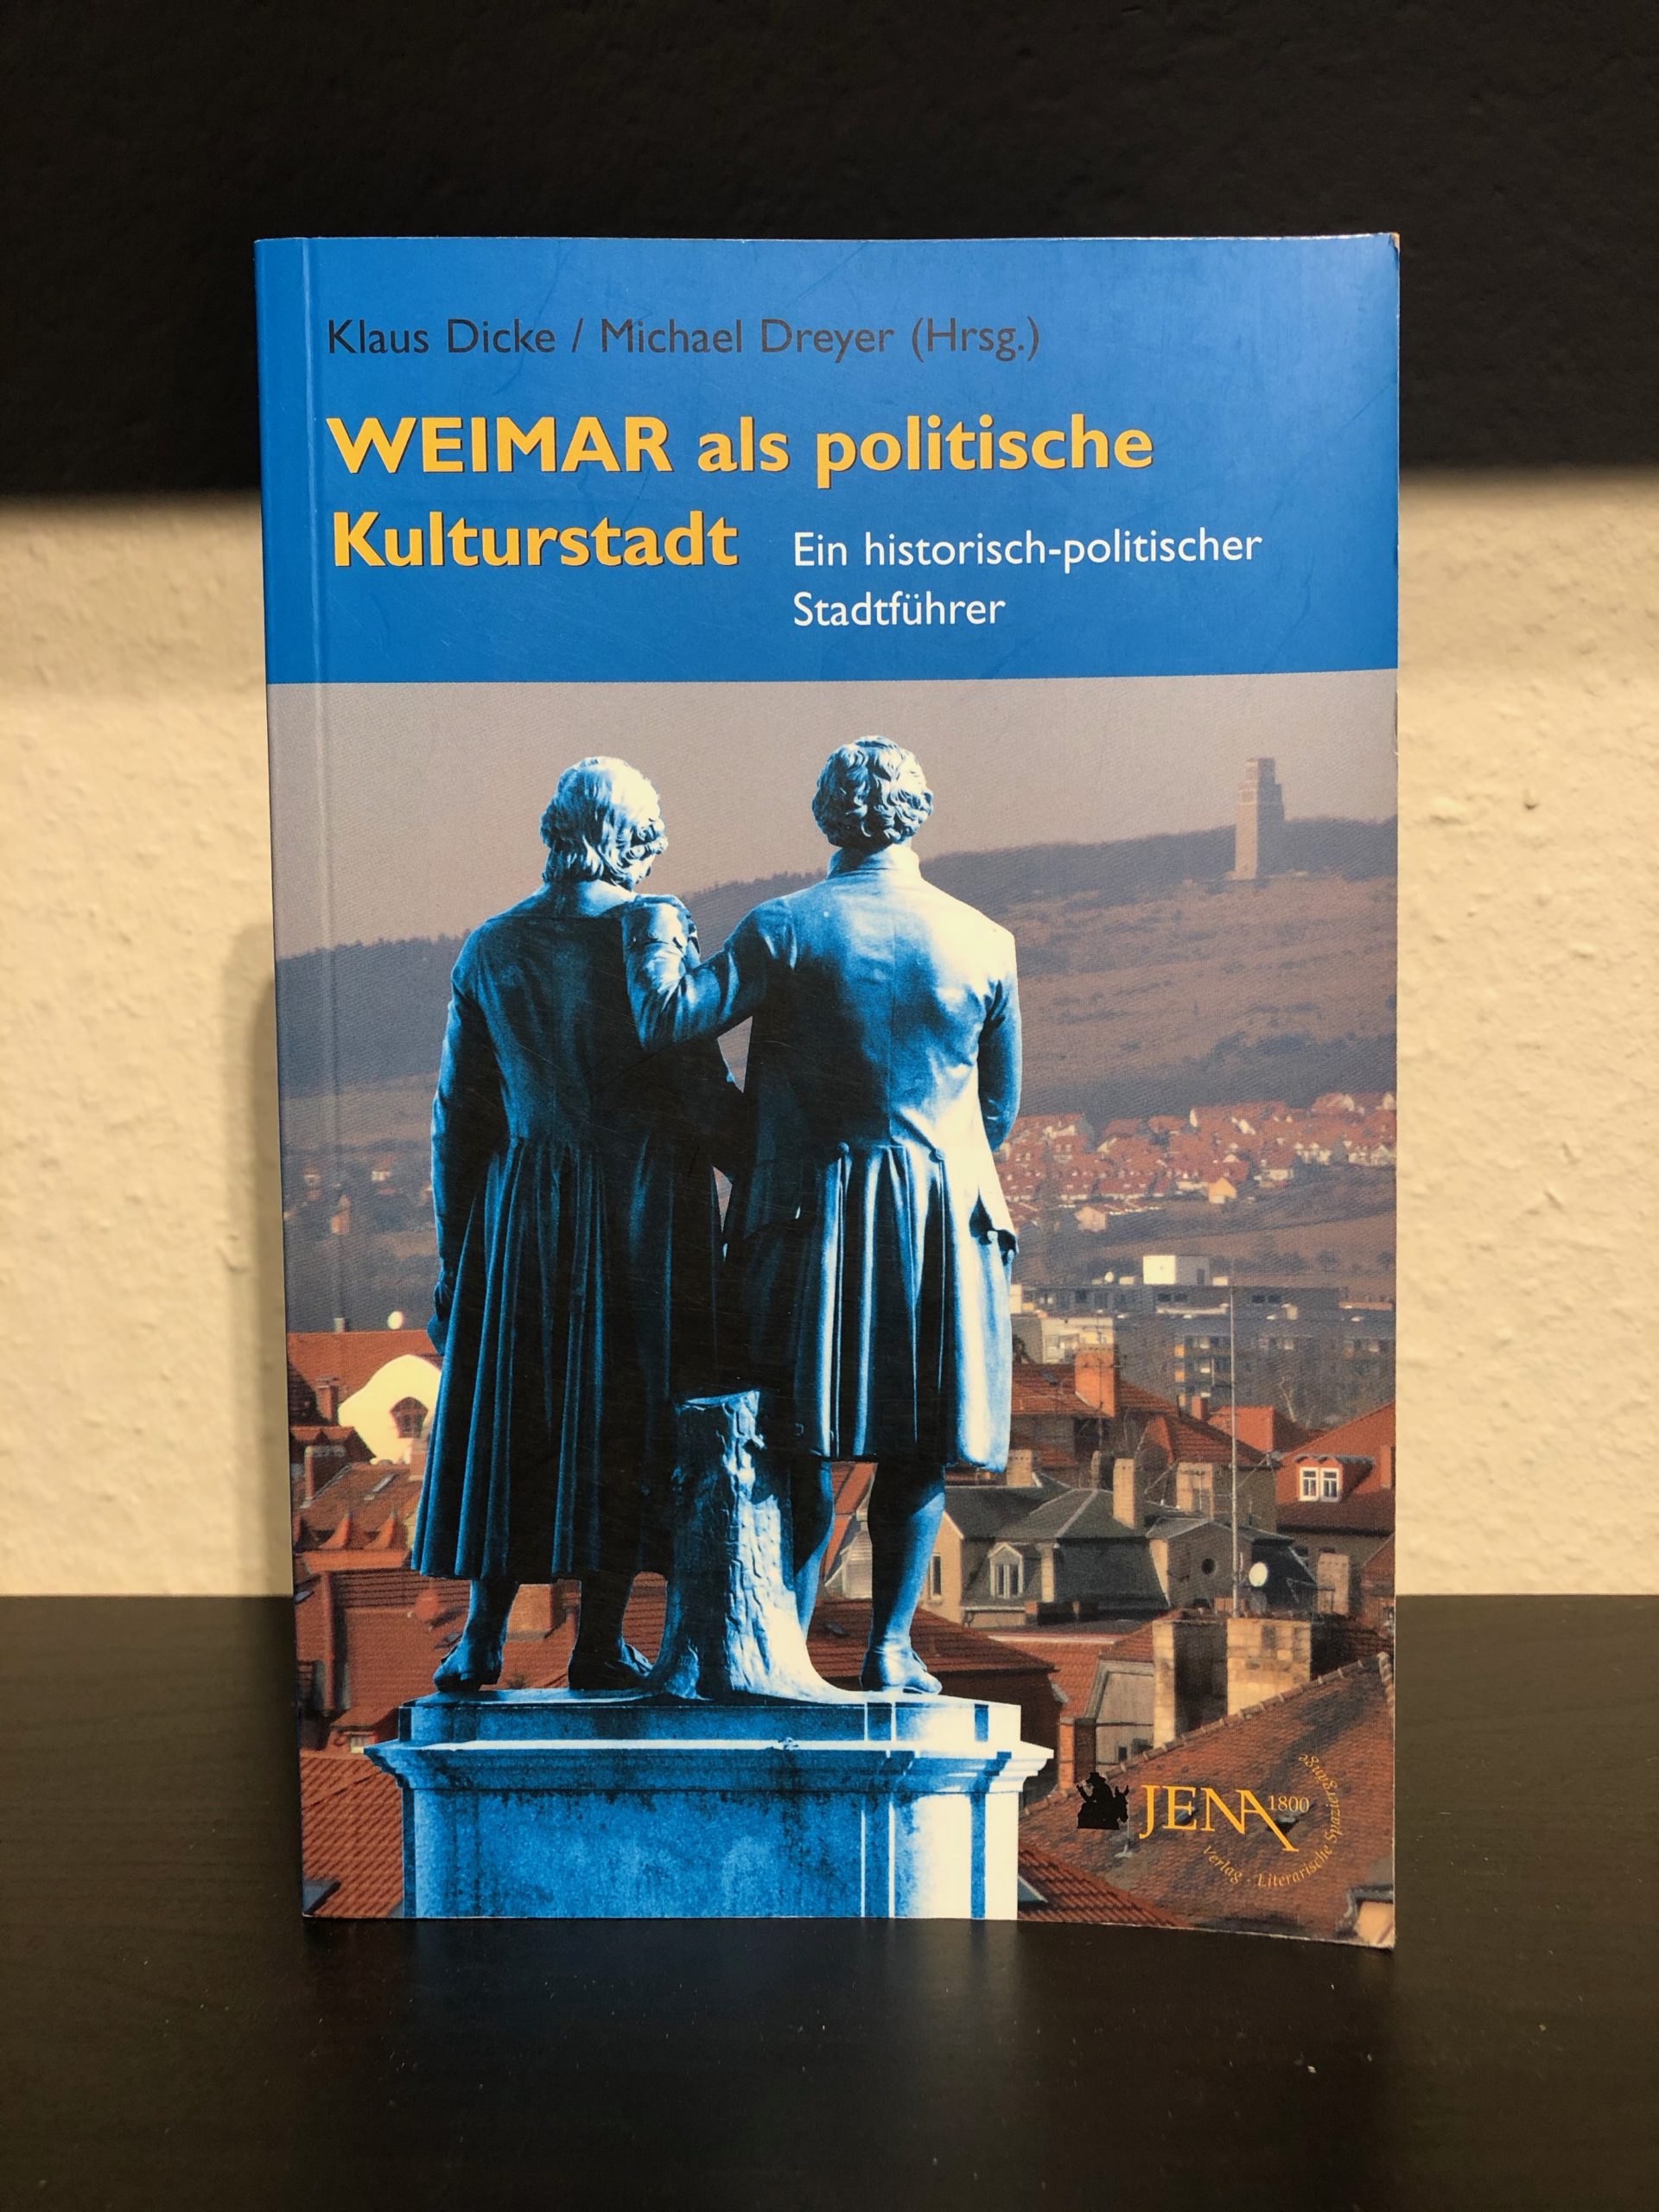 Weimar als politische Kulturstadt - Ein historisch-politischer Stadtführer - Klaus Dicke, Michael Dreyer